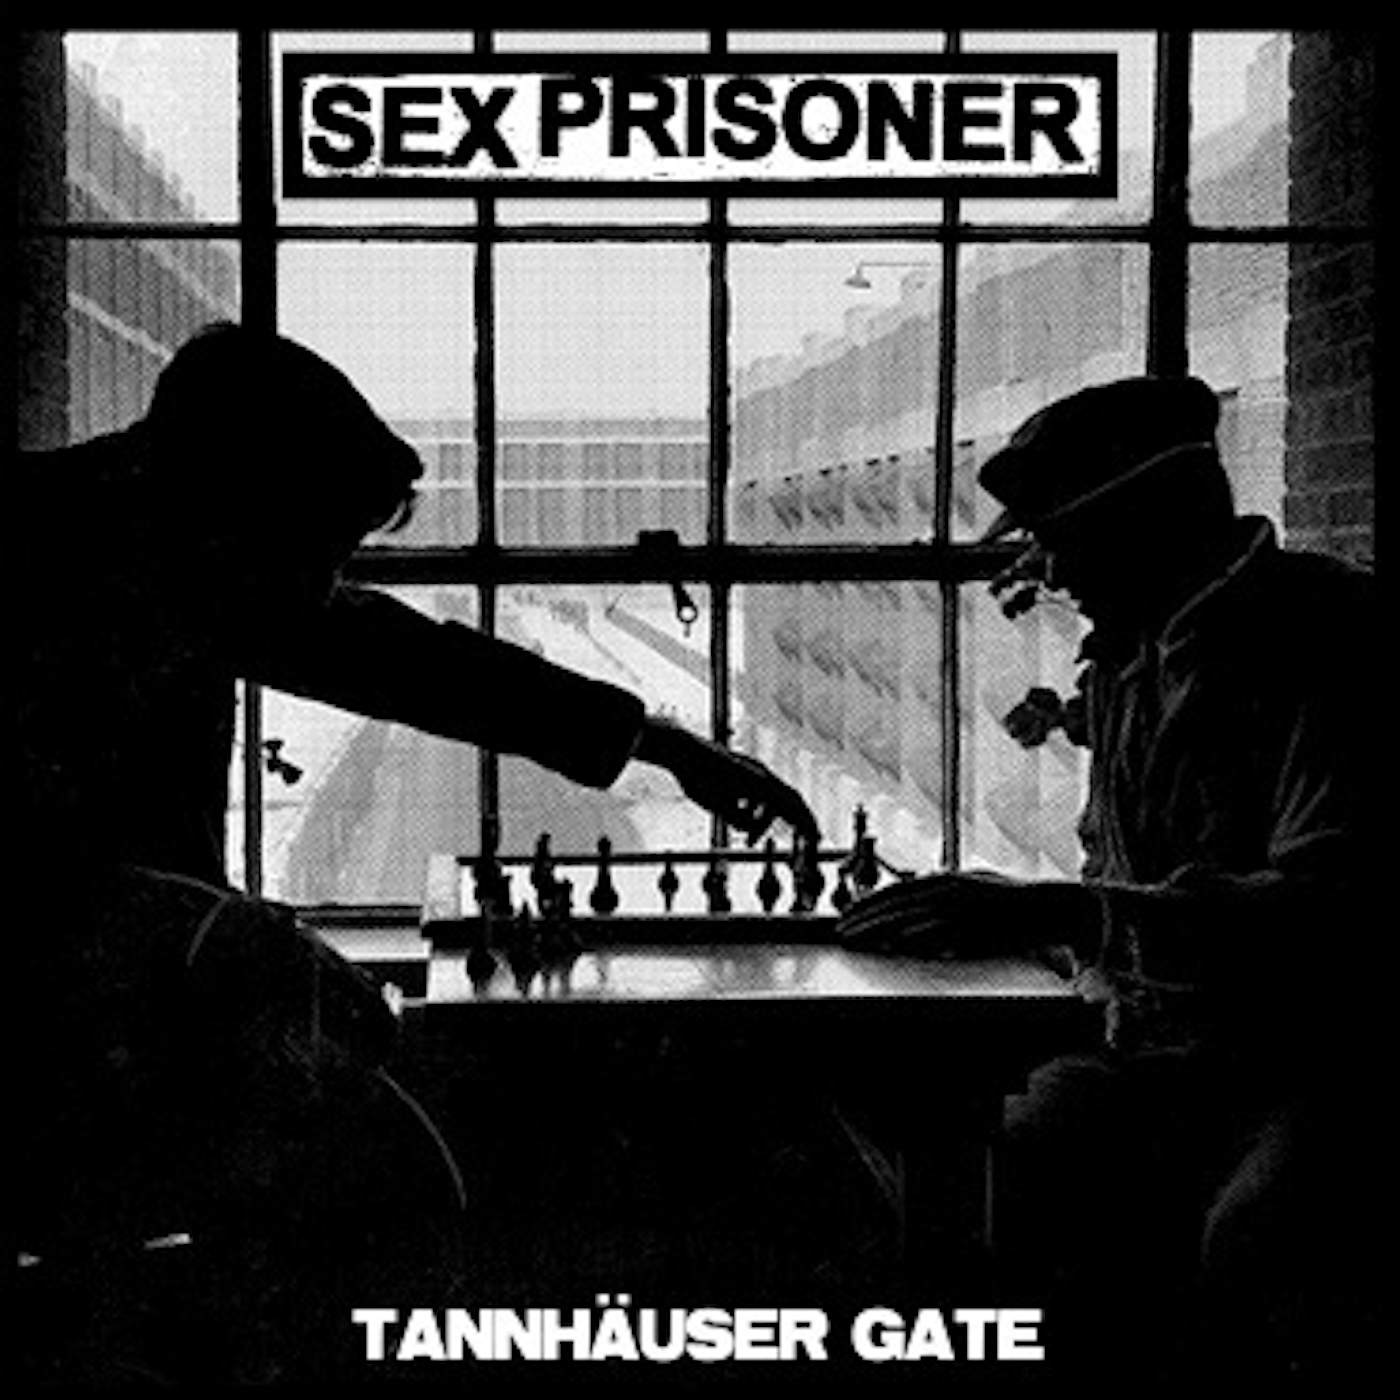 Sex Prisoner Tannhauser Gate Vinyl Record